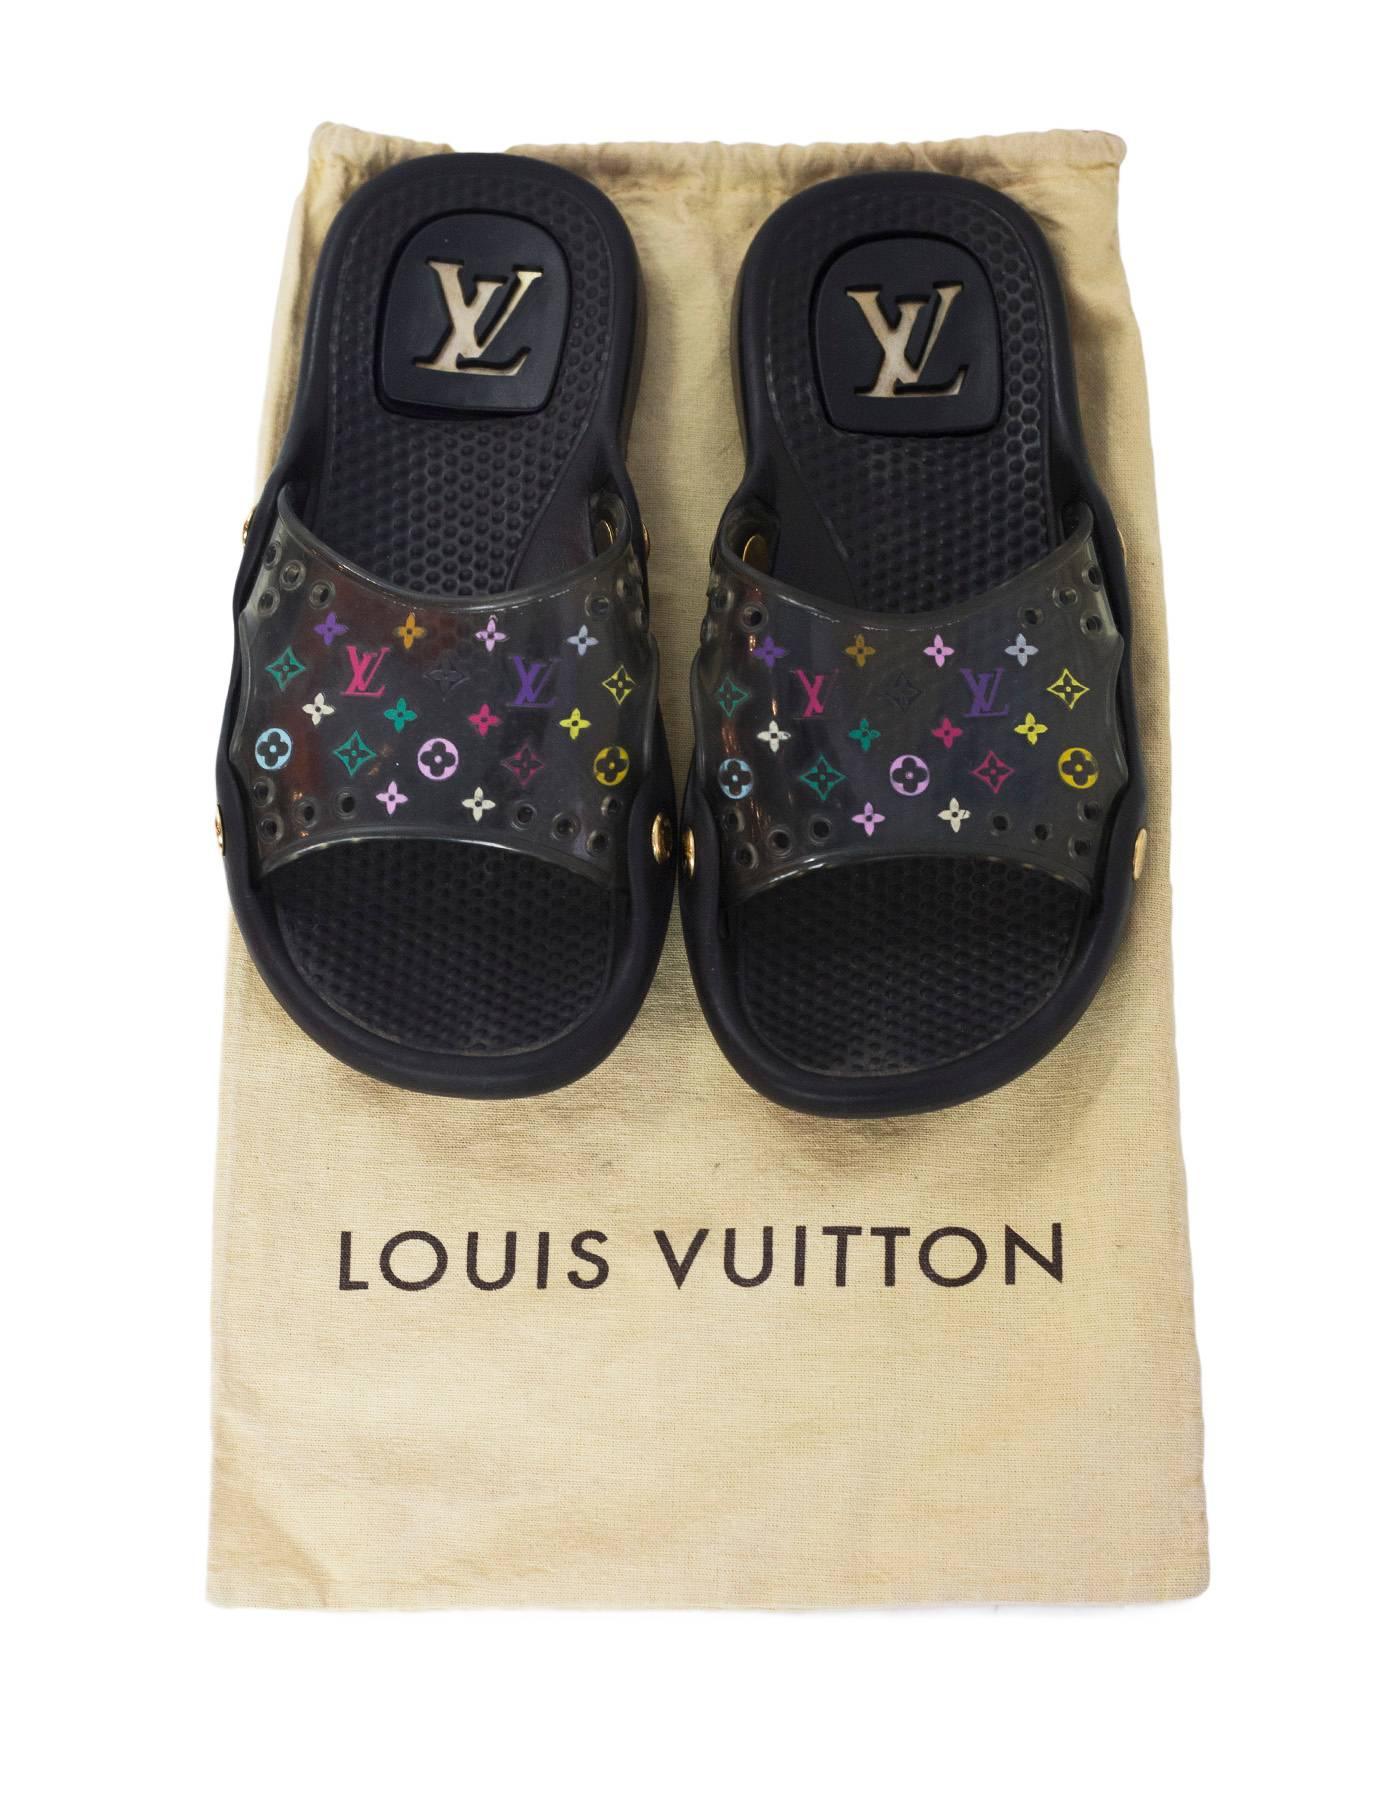 Louis Vuitton Black & Multi-Colored Monogram Slide Sandals sz 35 w/DB 2